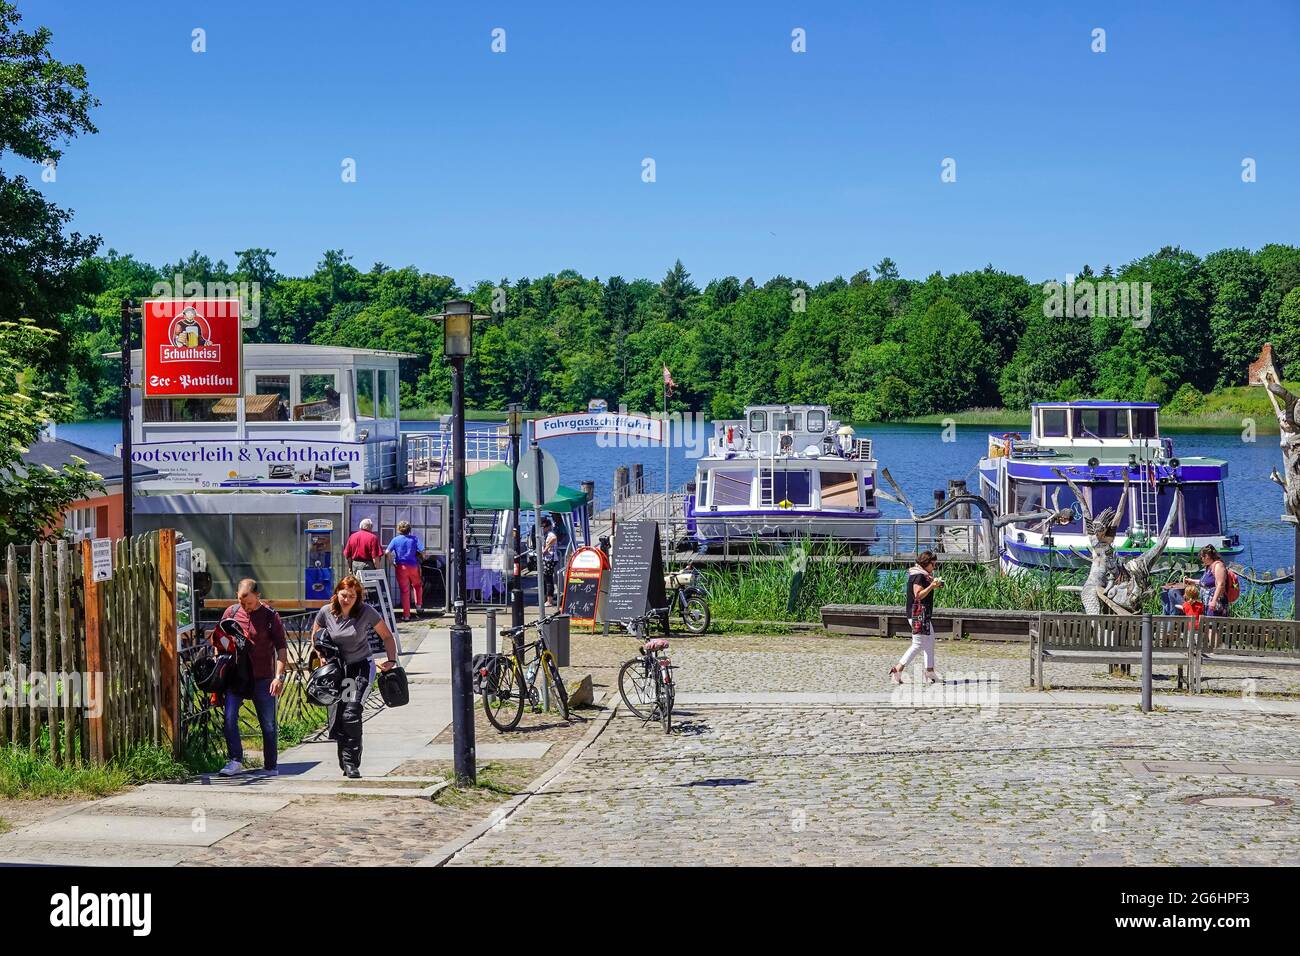 Schiffsanleger, Ausflugsboote, Grienericksee, Rheinsberg, Landkreis Ostprignitz-Ruppin, Brandenburg, Deutschland Stock Photo